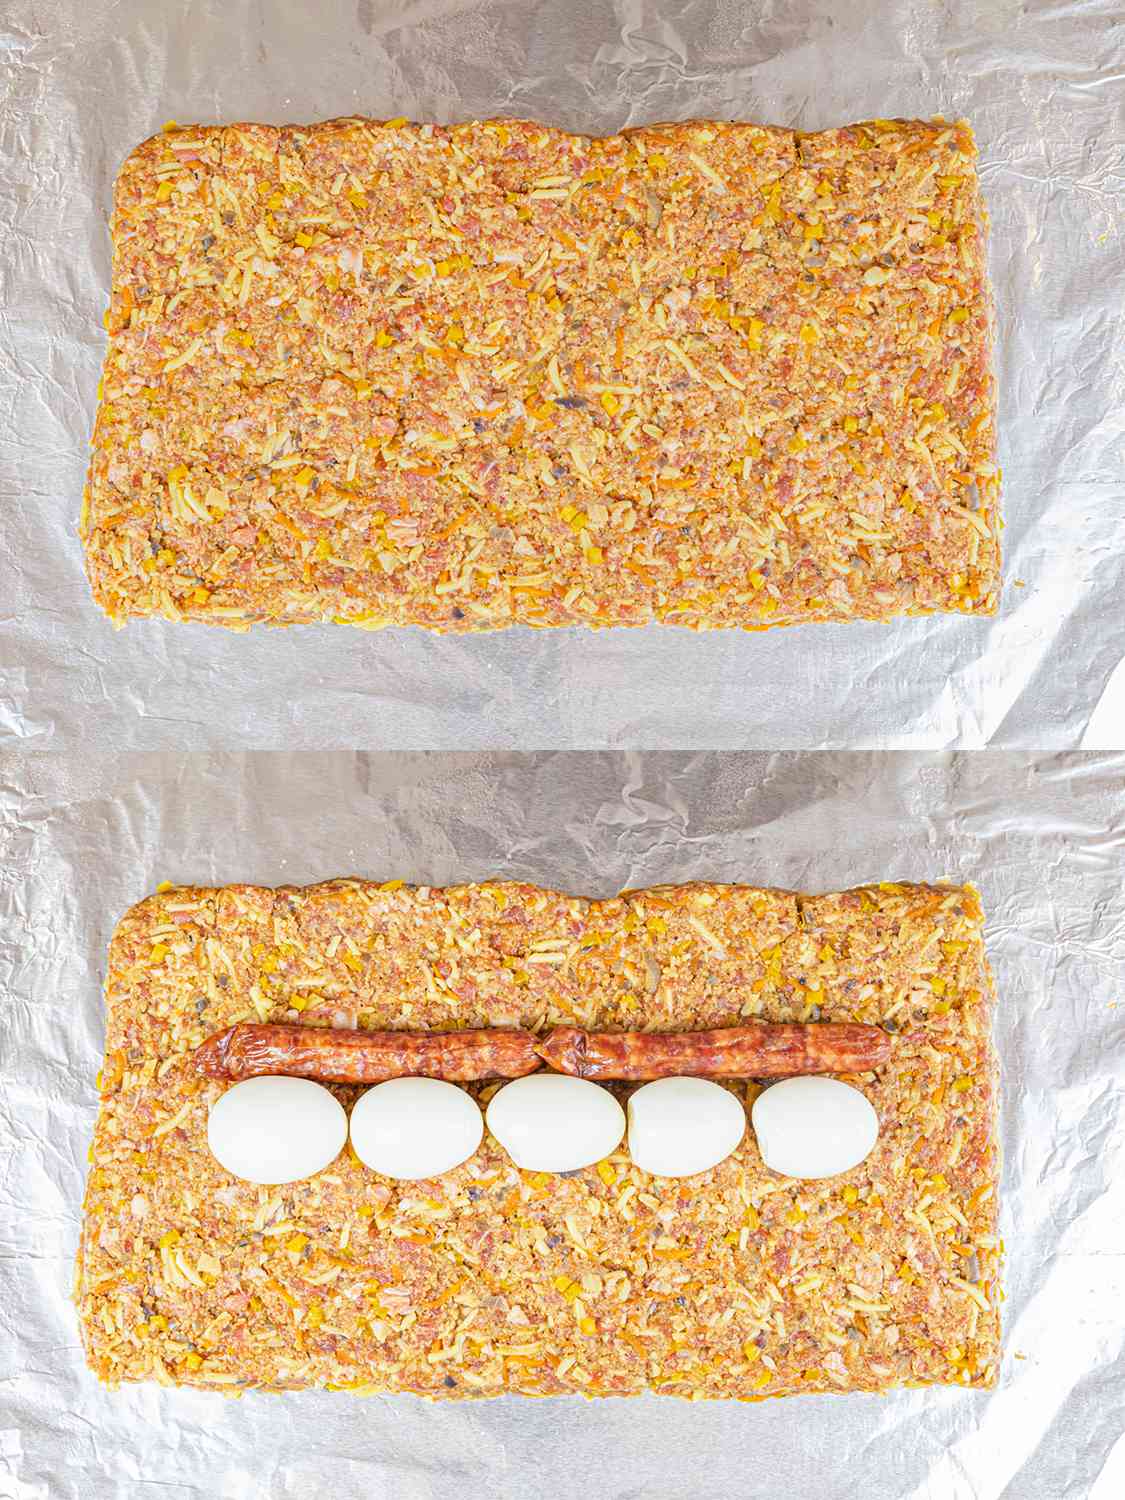 垂直的拼贴画。上图:肉混合物铺在铝箔纸上。下图:5个煮熟的鸡蛋和两根香肠在肉混合物中间排成两行。